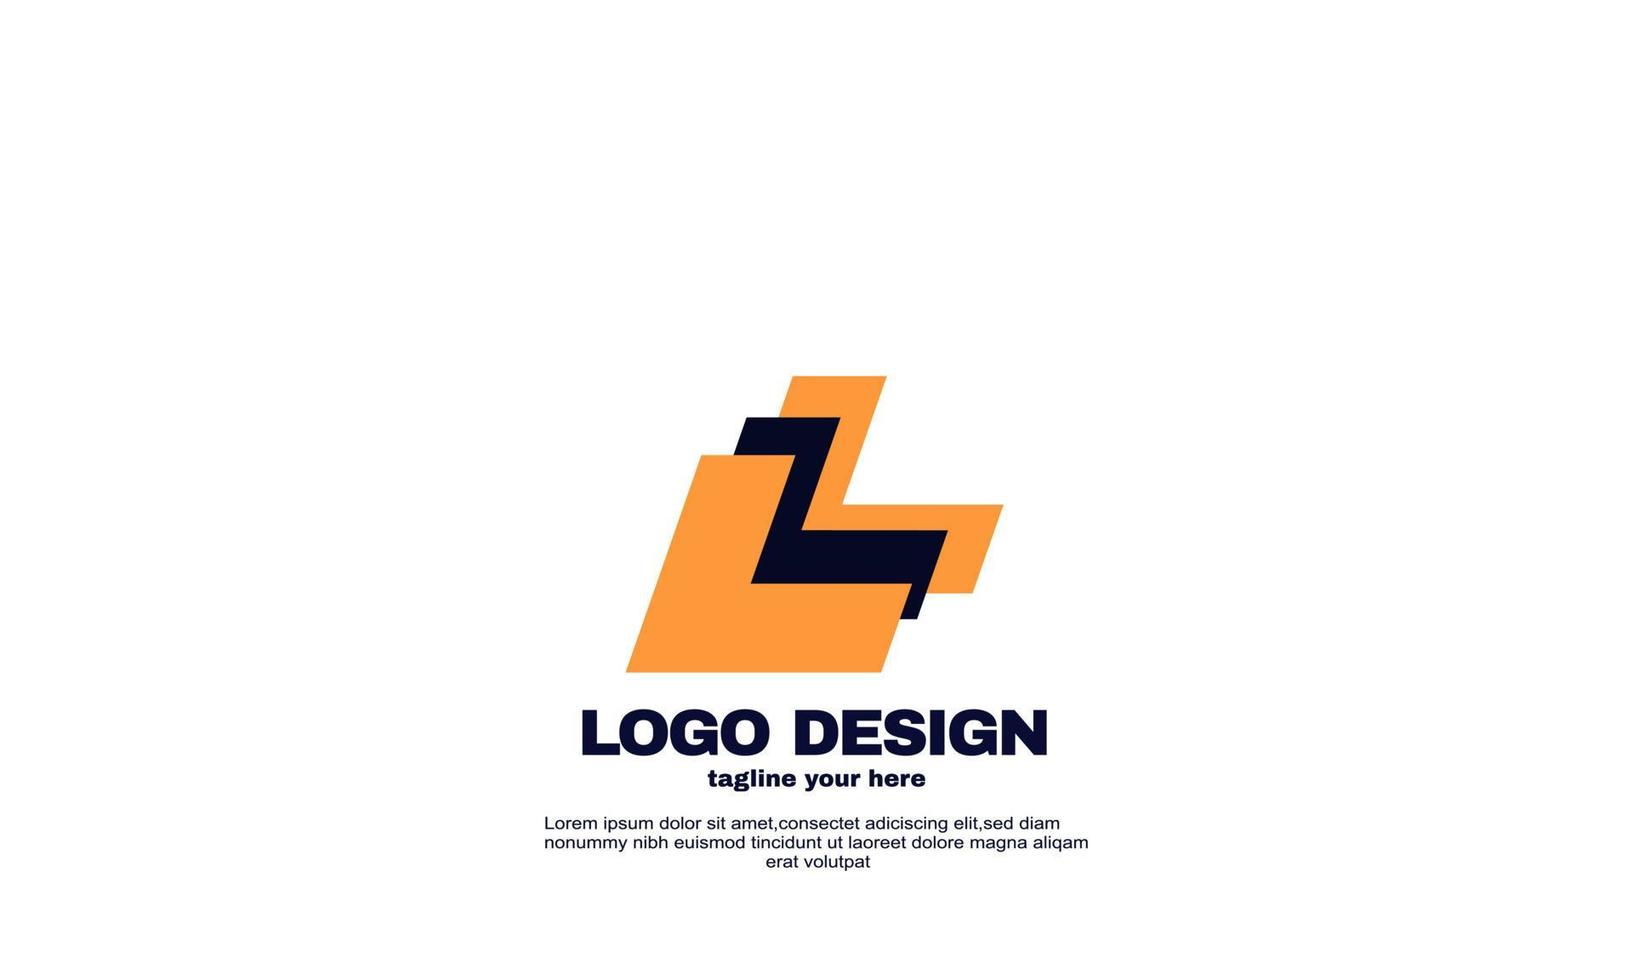 Vektor abstrakte kreative Inspiration bestes Logo leistungsstarkes geometrisches Firmen- und Geschäftslogodesign